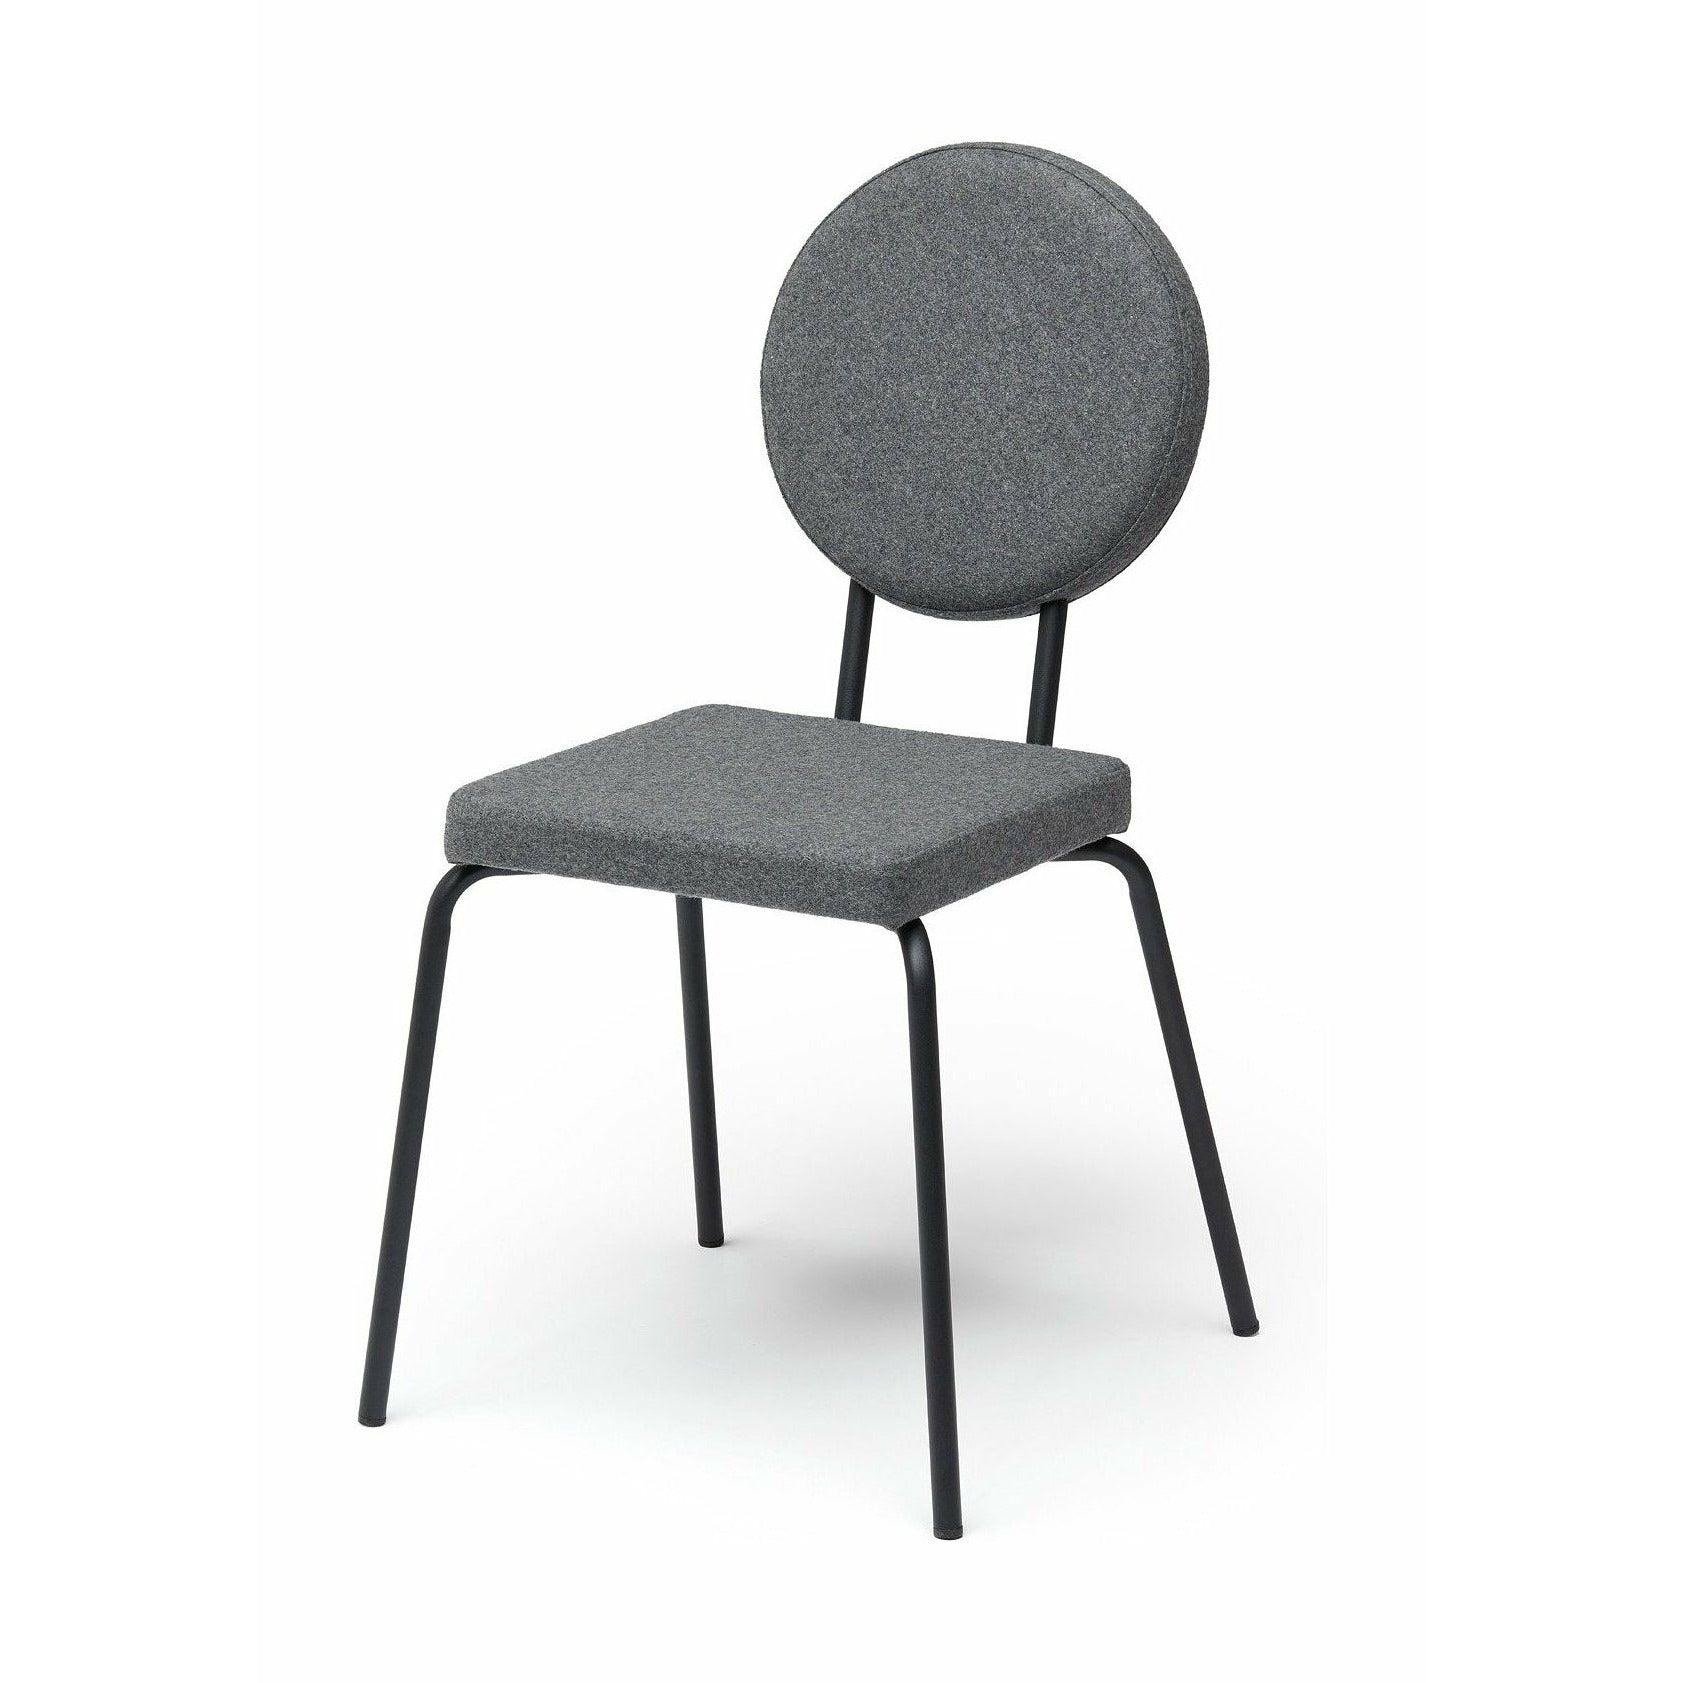 Sedia opzione puik sedile quadrato / backrest round, grigio chiaro